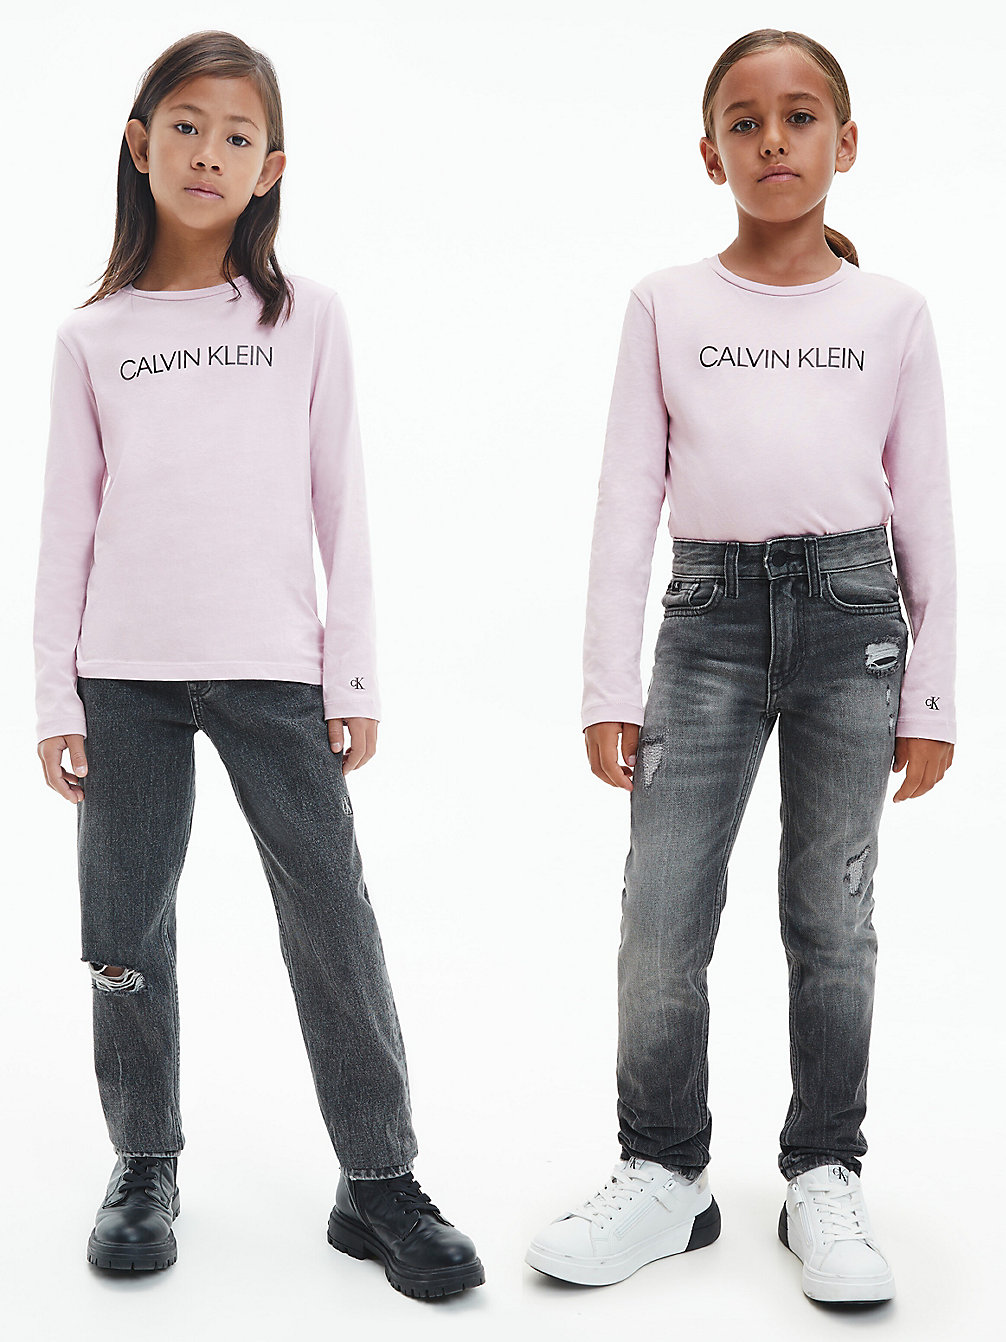 HAWAII ORCHID Unisex T-Shirt Met Lange Mouwen undefined kids unisex Calvin Klein